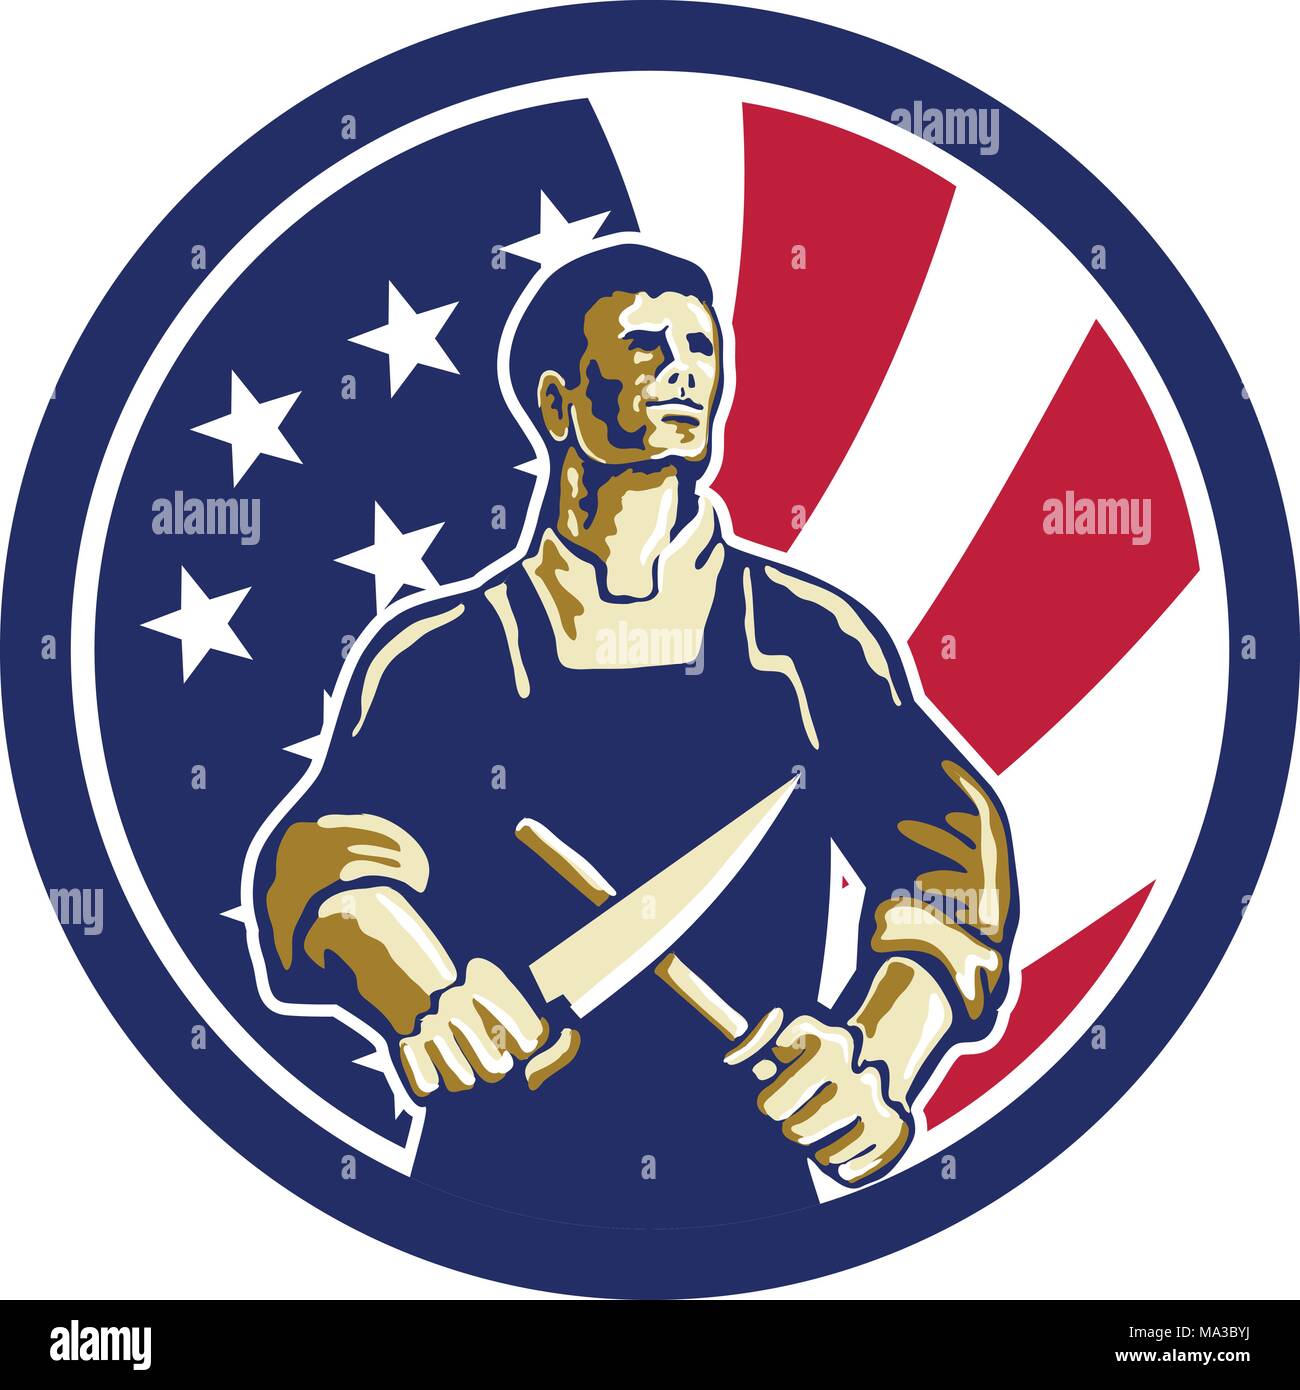 Symbol Retro Stil Abbildung eines amerikanischen Metzger Schärfen der Messer von vorne gesehen mit den Vereinigten Staaten von Amerika USA Star Spangled Banner oder sta Stock Vektor